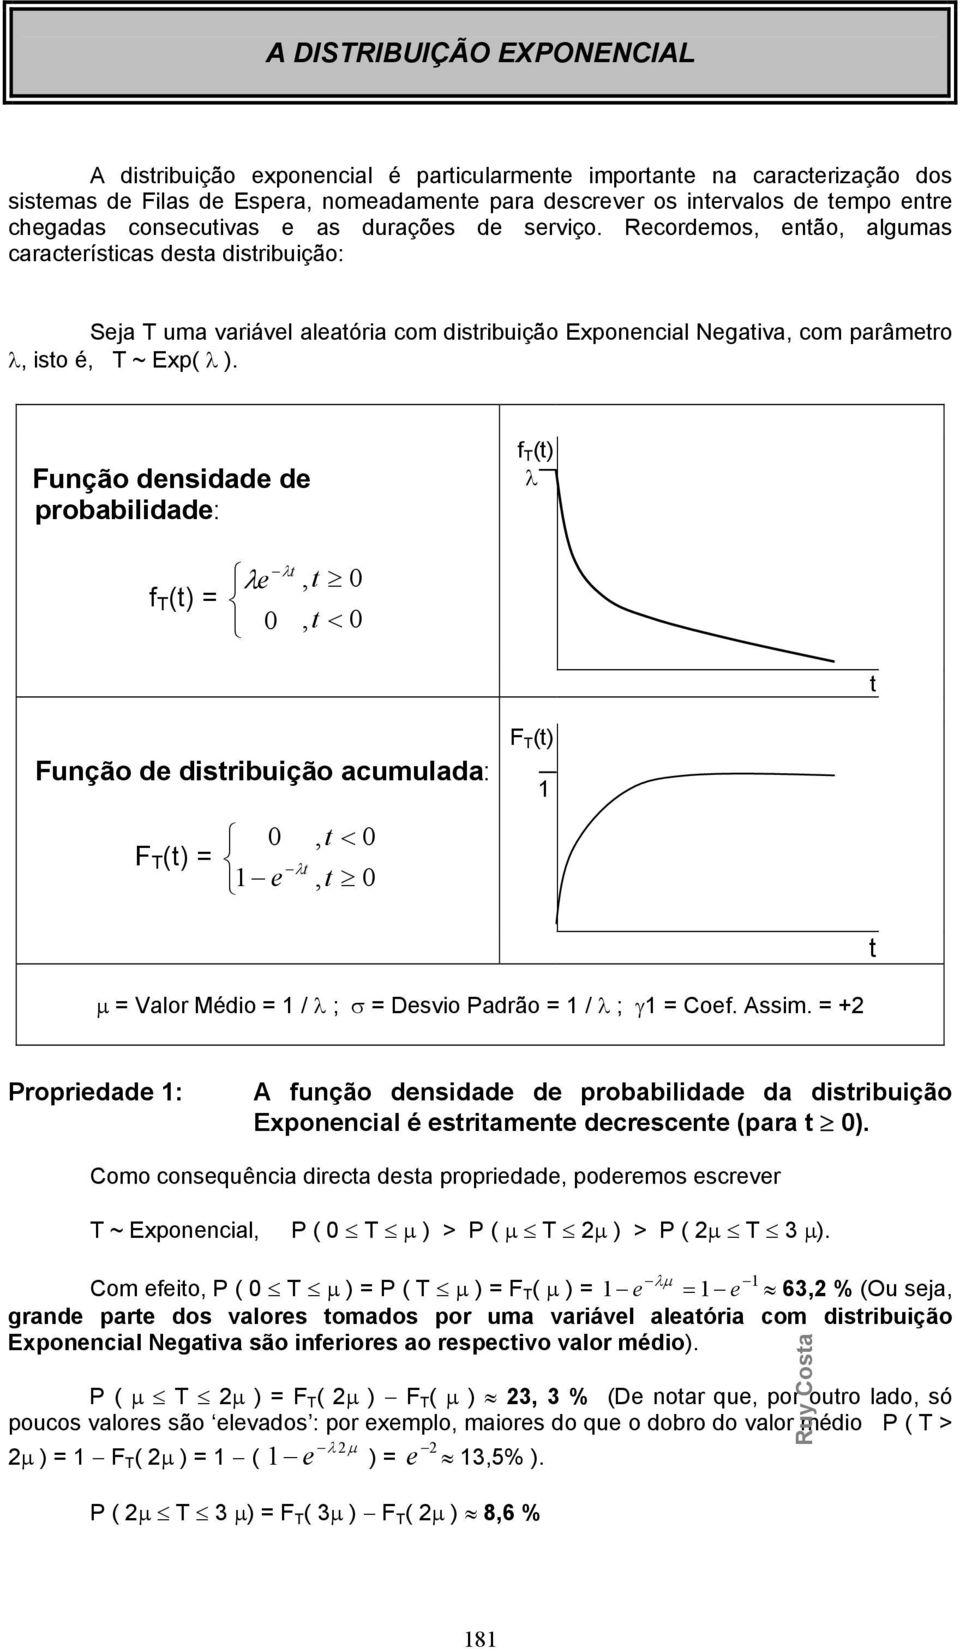 Fução desidade de probabilidade: f T (t) λ f T (t) λe λt, t, t < t Fução de distribuição acumulada: F T (t), t < e λt, t F T (t) t Valor Médio / λ ; σ Desvio Padrão / λ ; γ Coef. Assim.